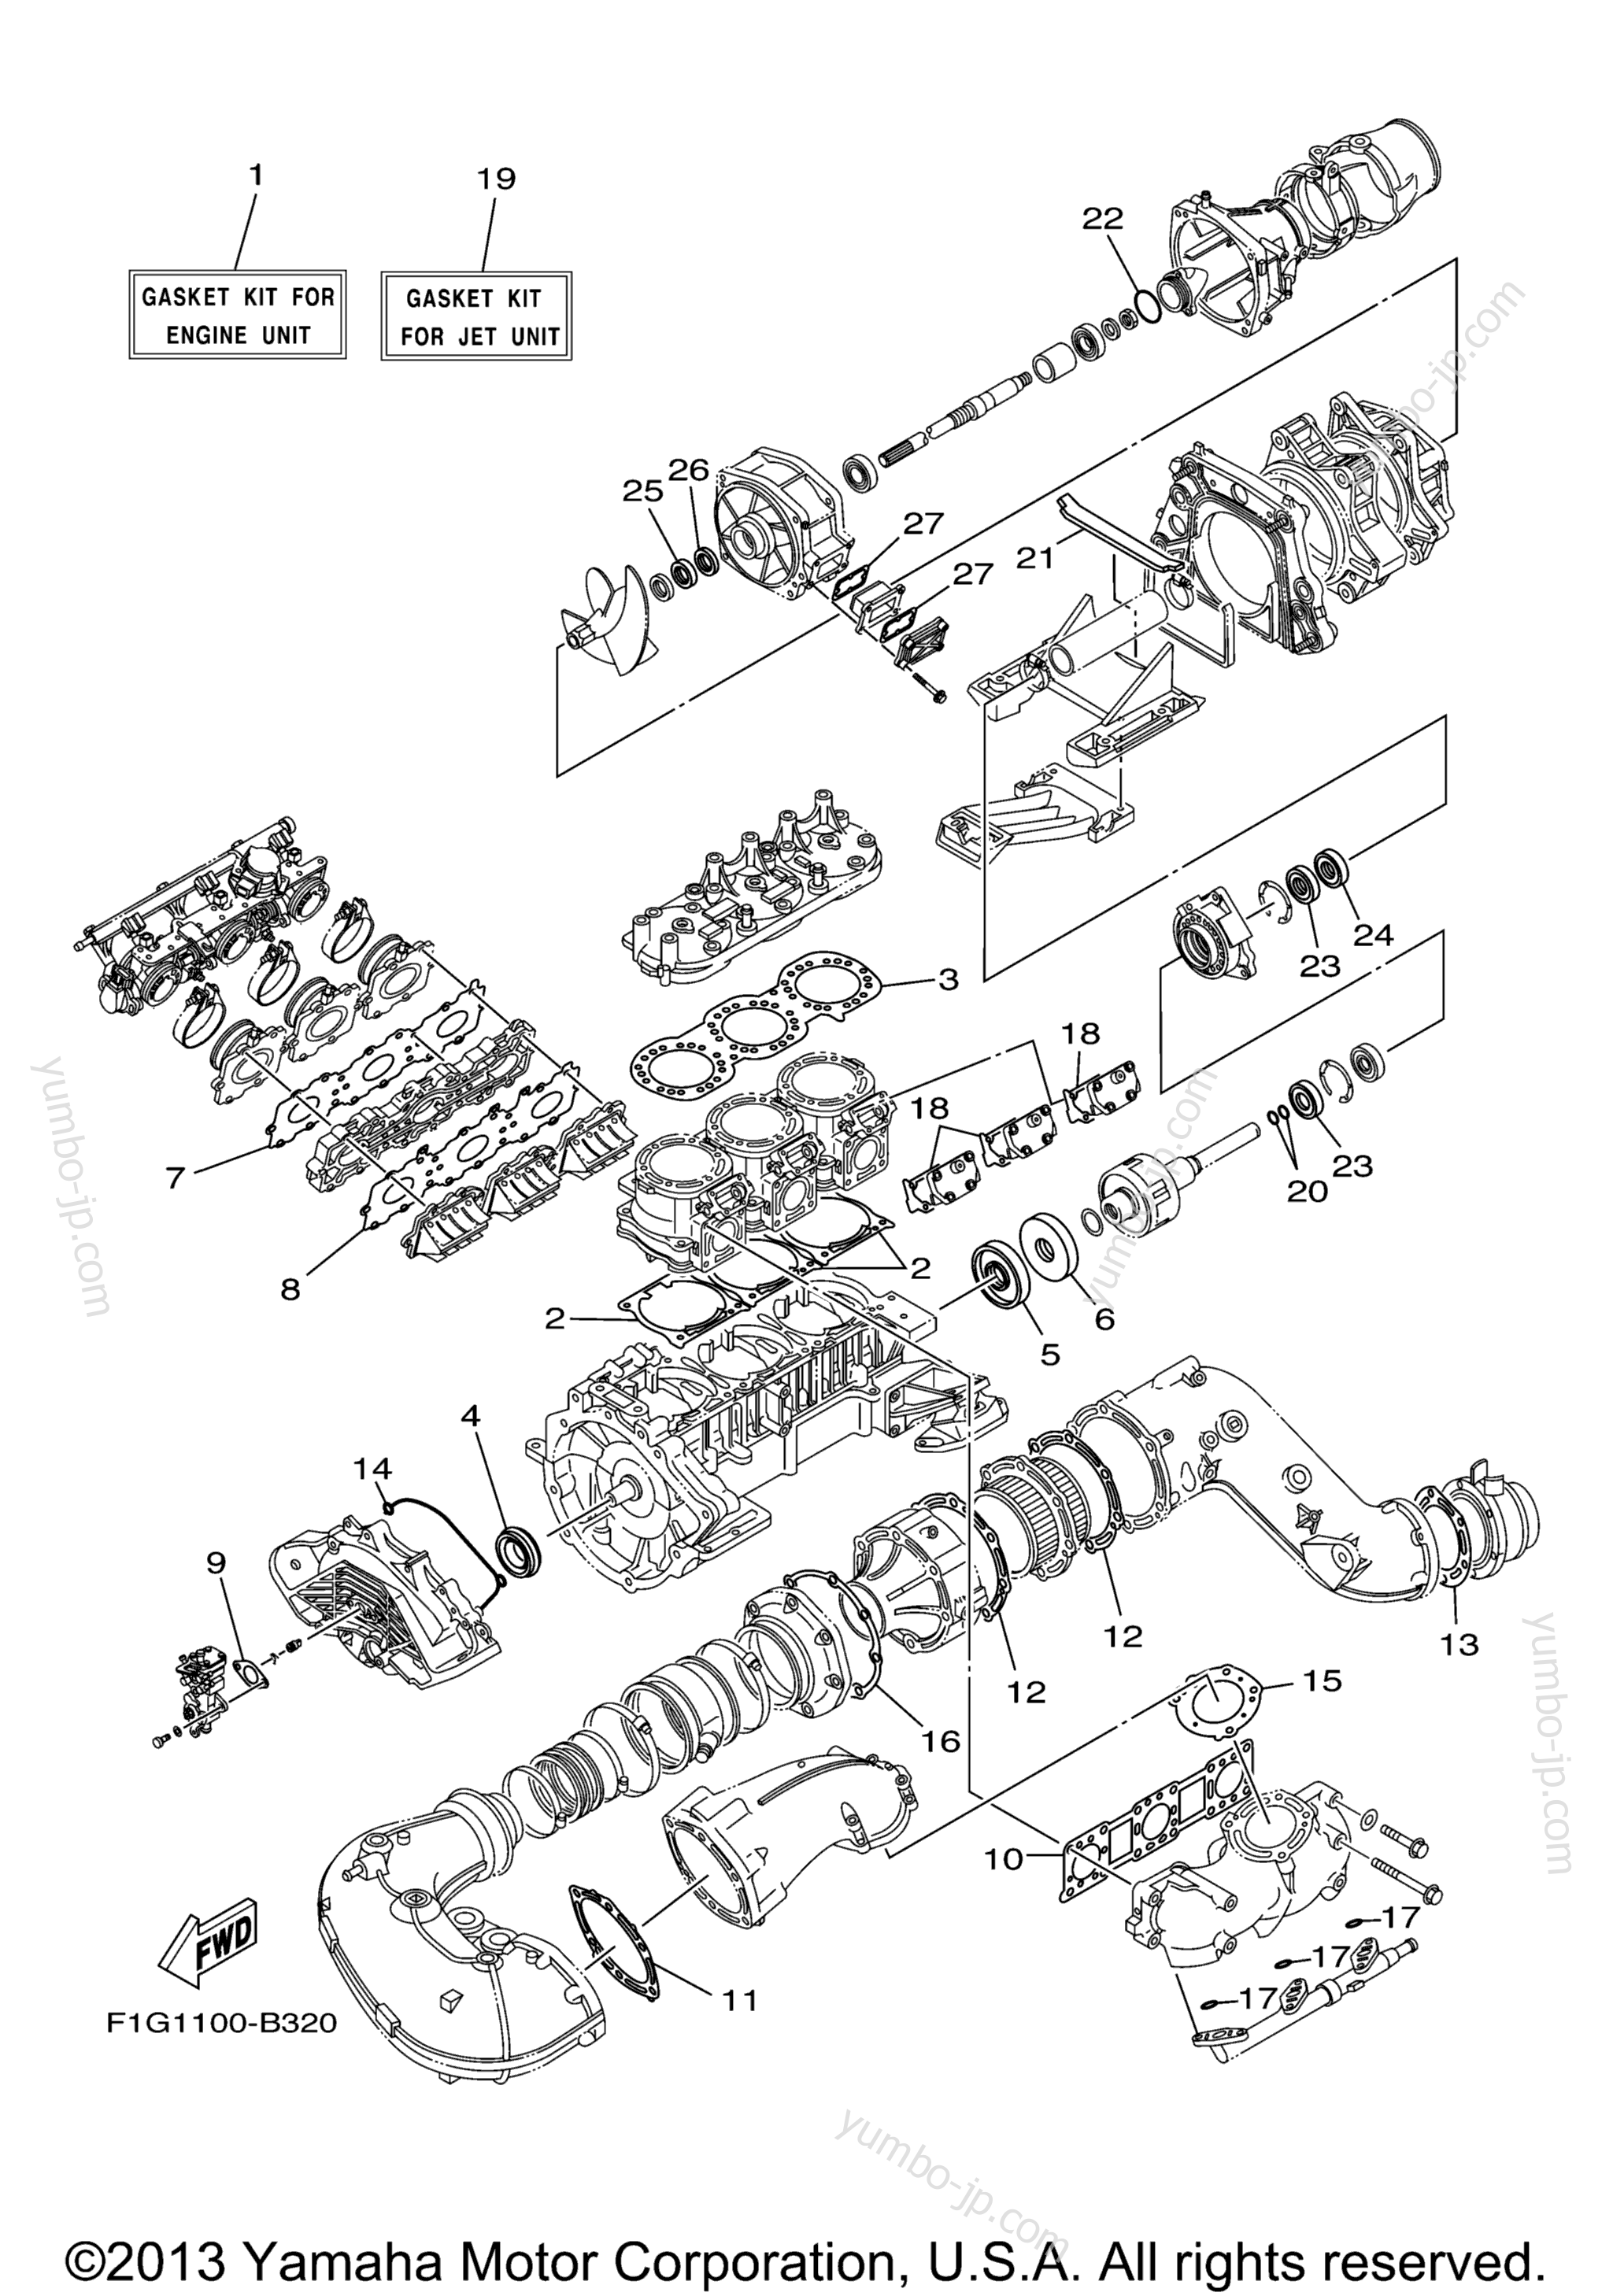 Repair Kit 1 для гидроциклов YAMAHA GP1300R (GP1300B) 2003 г.